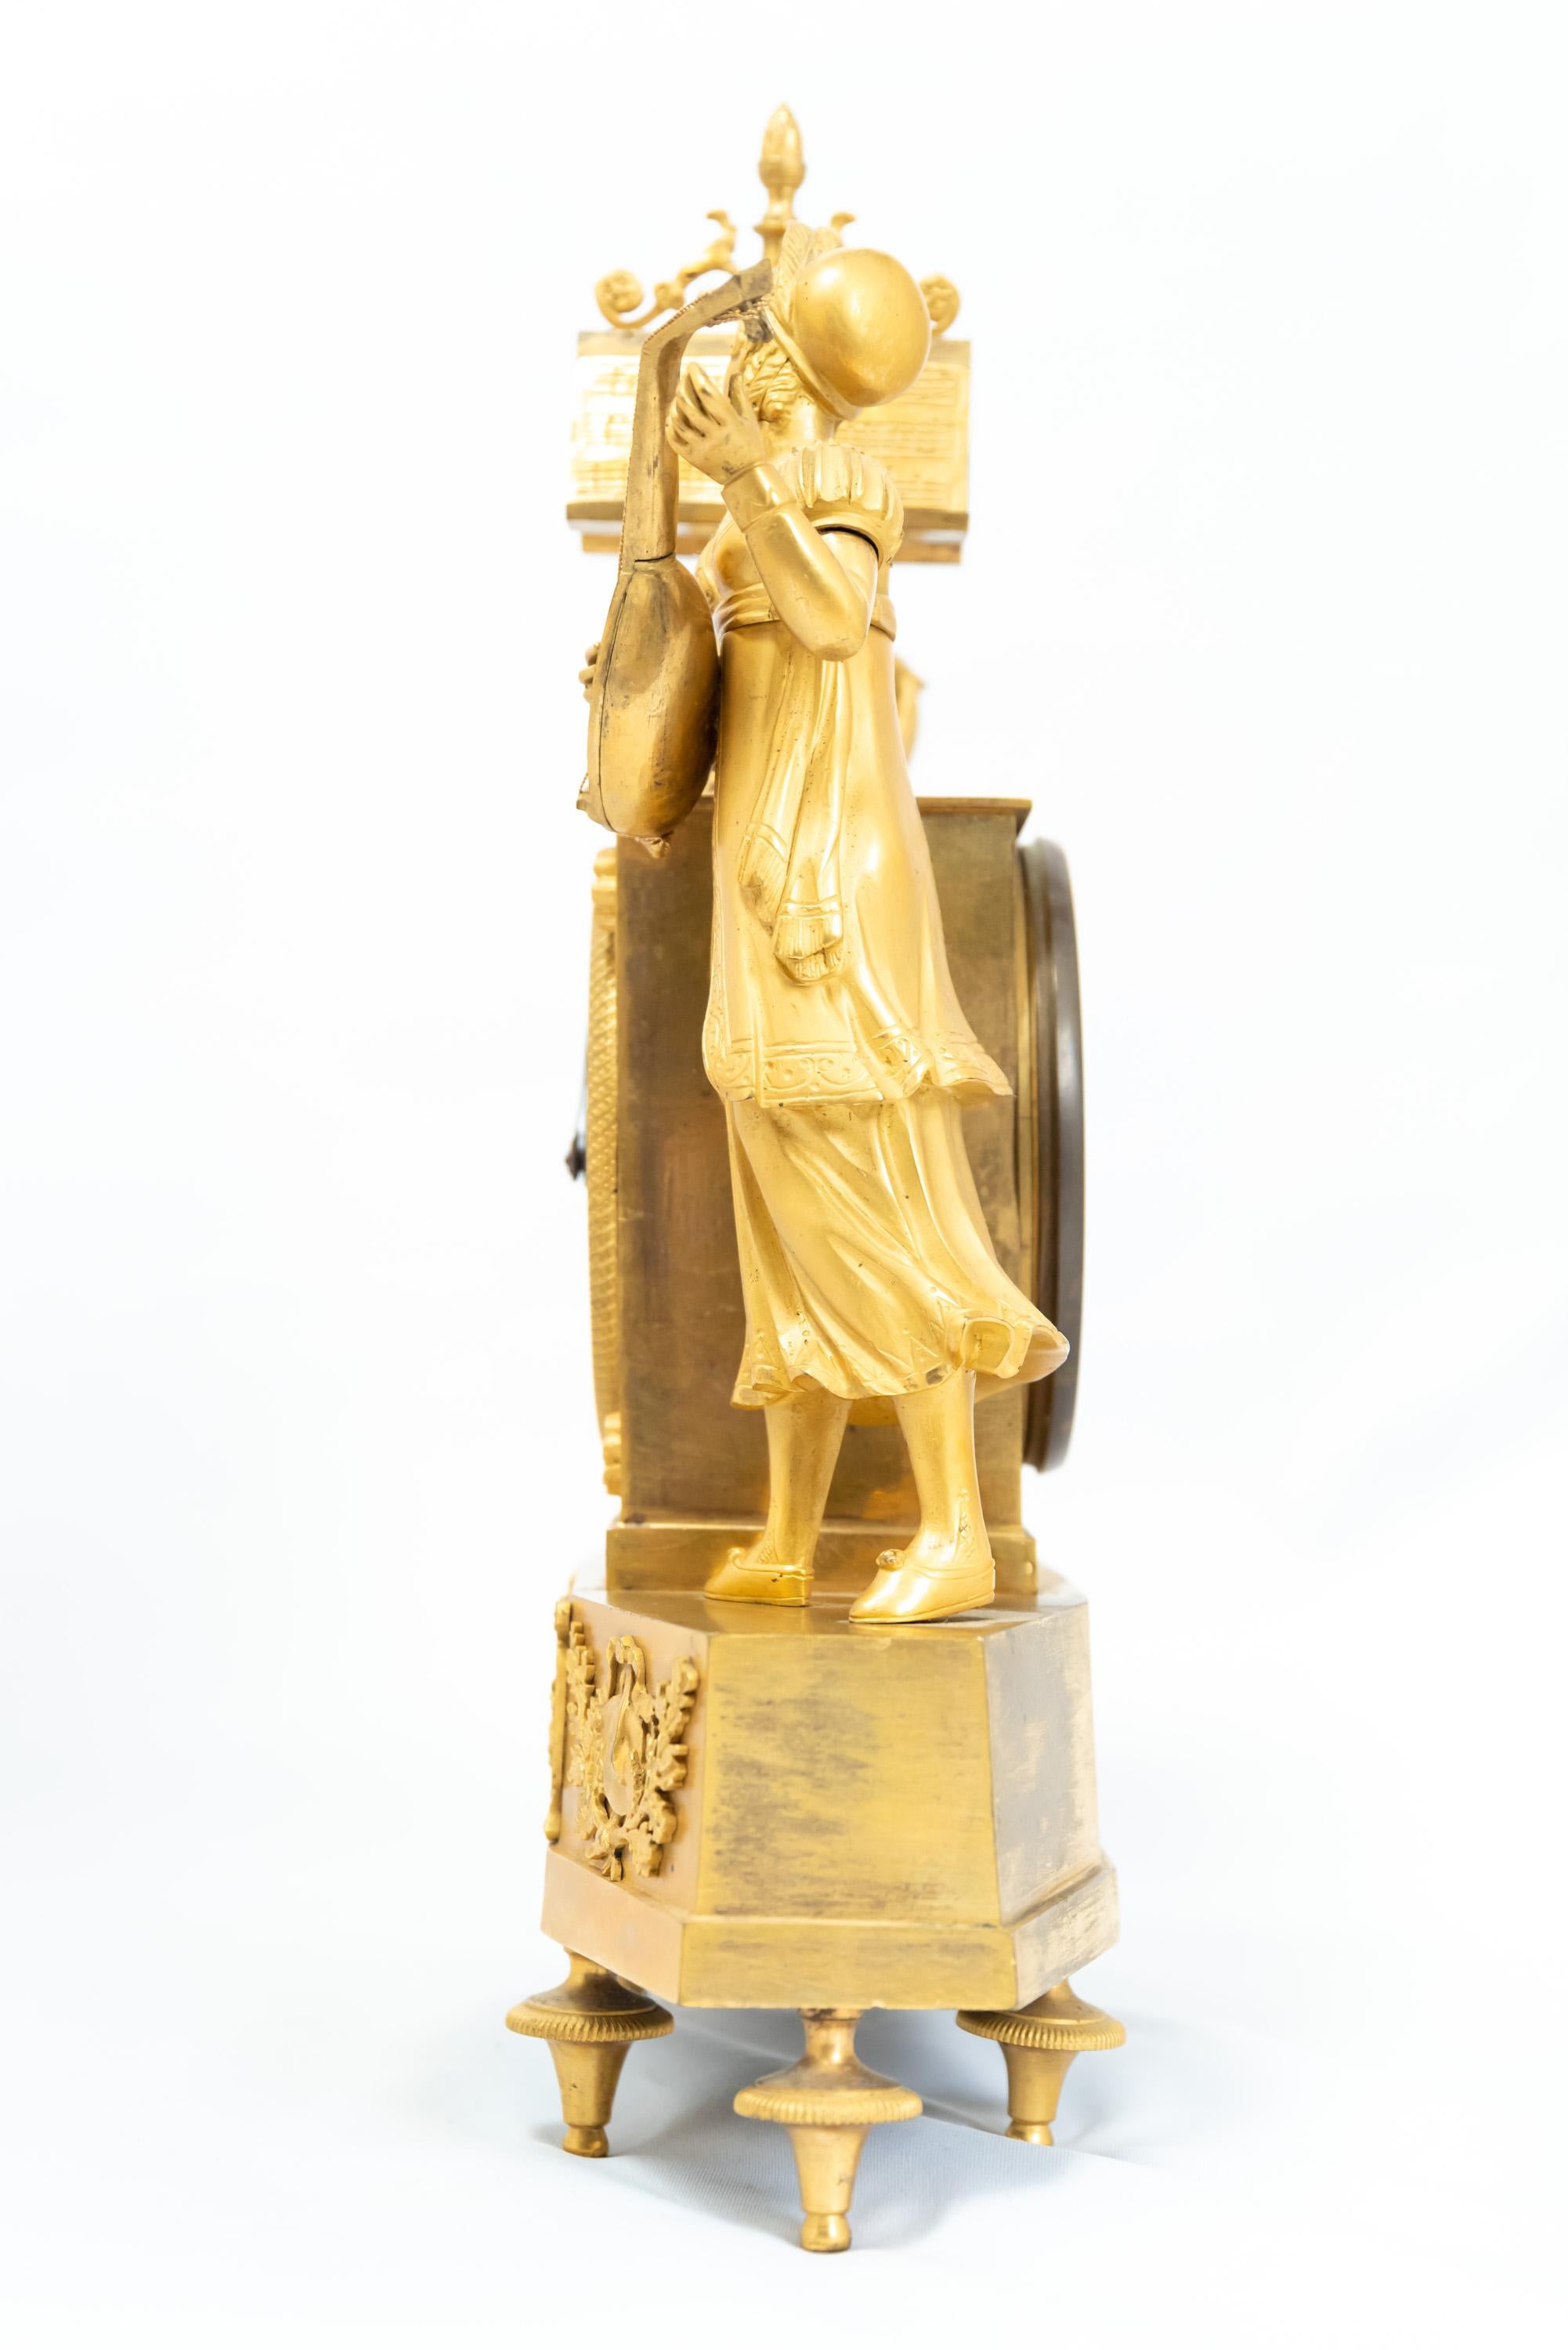 Französische feuervergoldete Uhr, die ein stehendes Figurenpaar in 